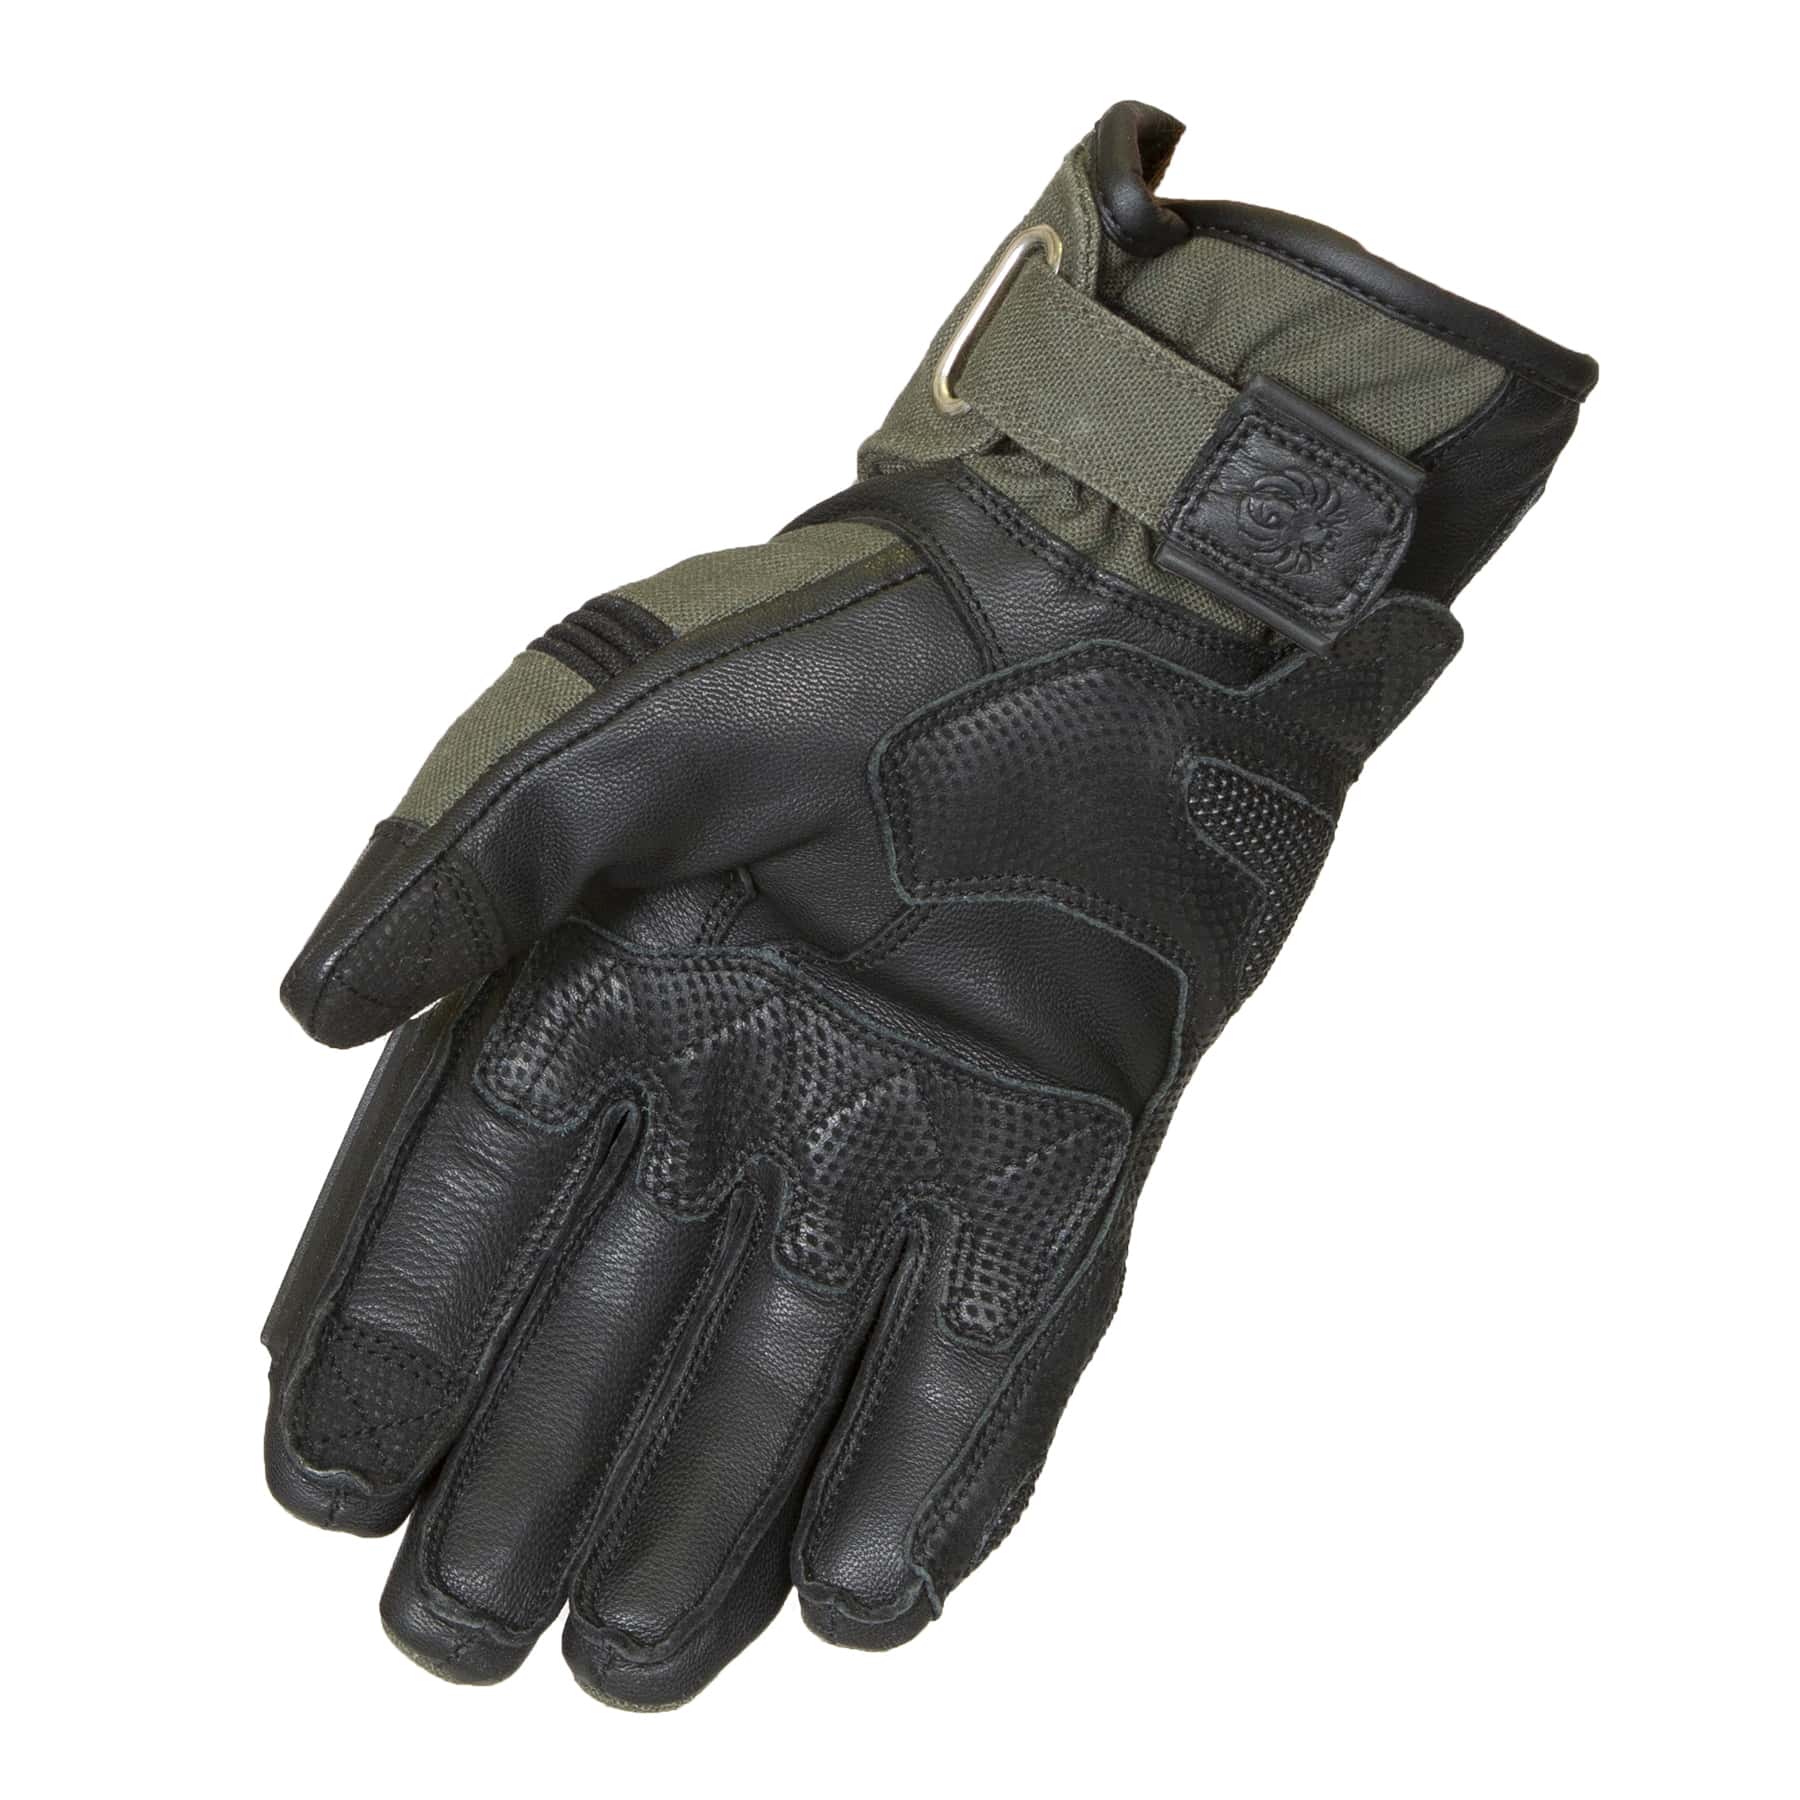 Merlin Mahala Waterproof Explorer motorcycle gloves in black/olive